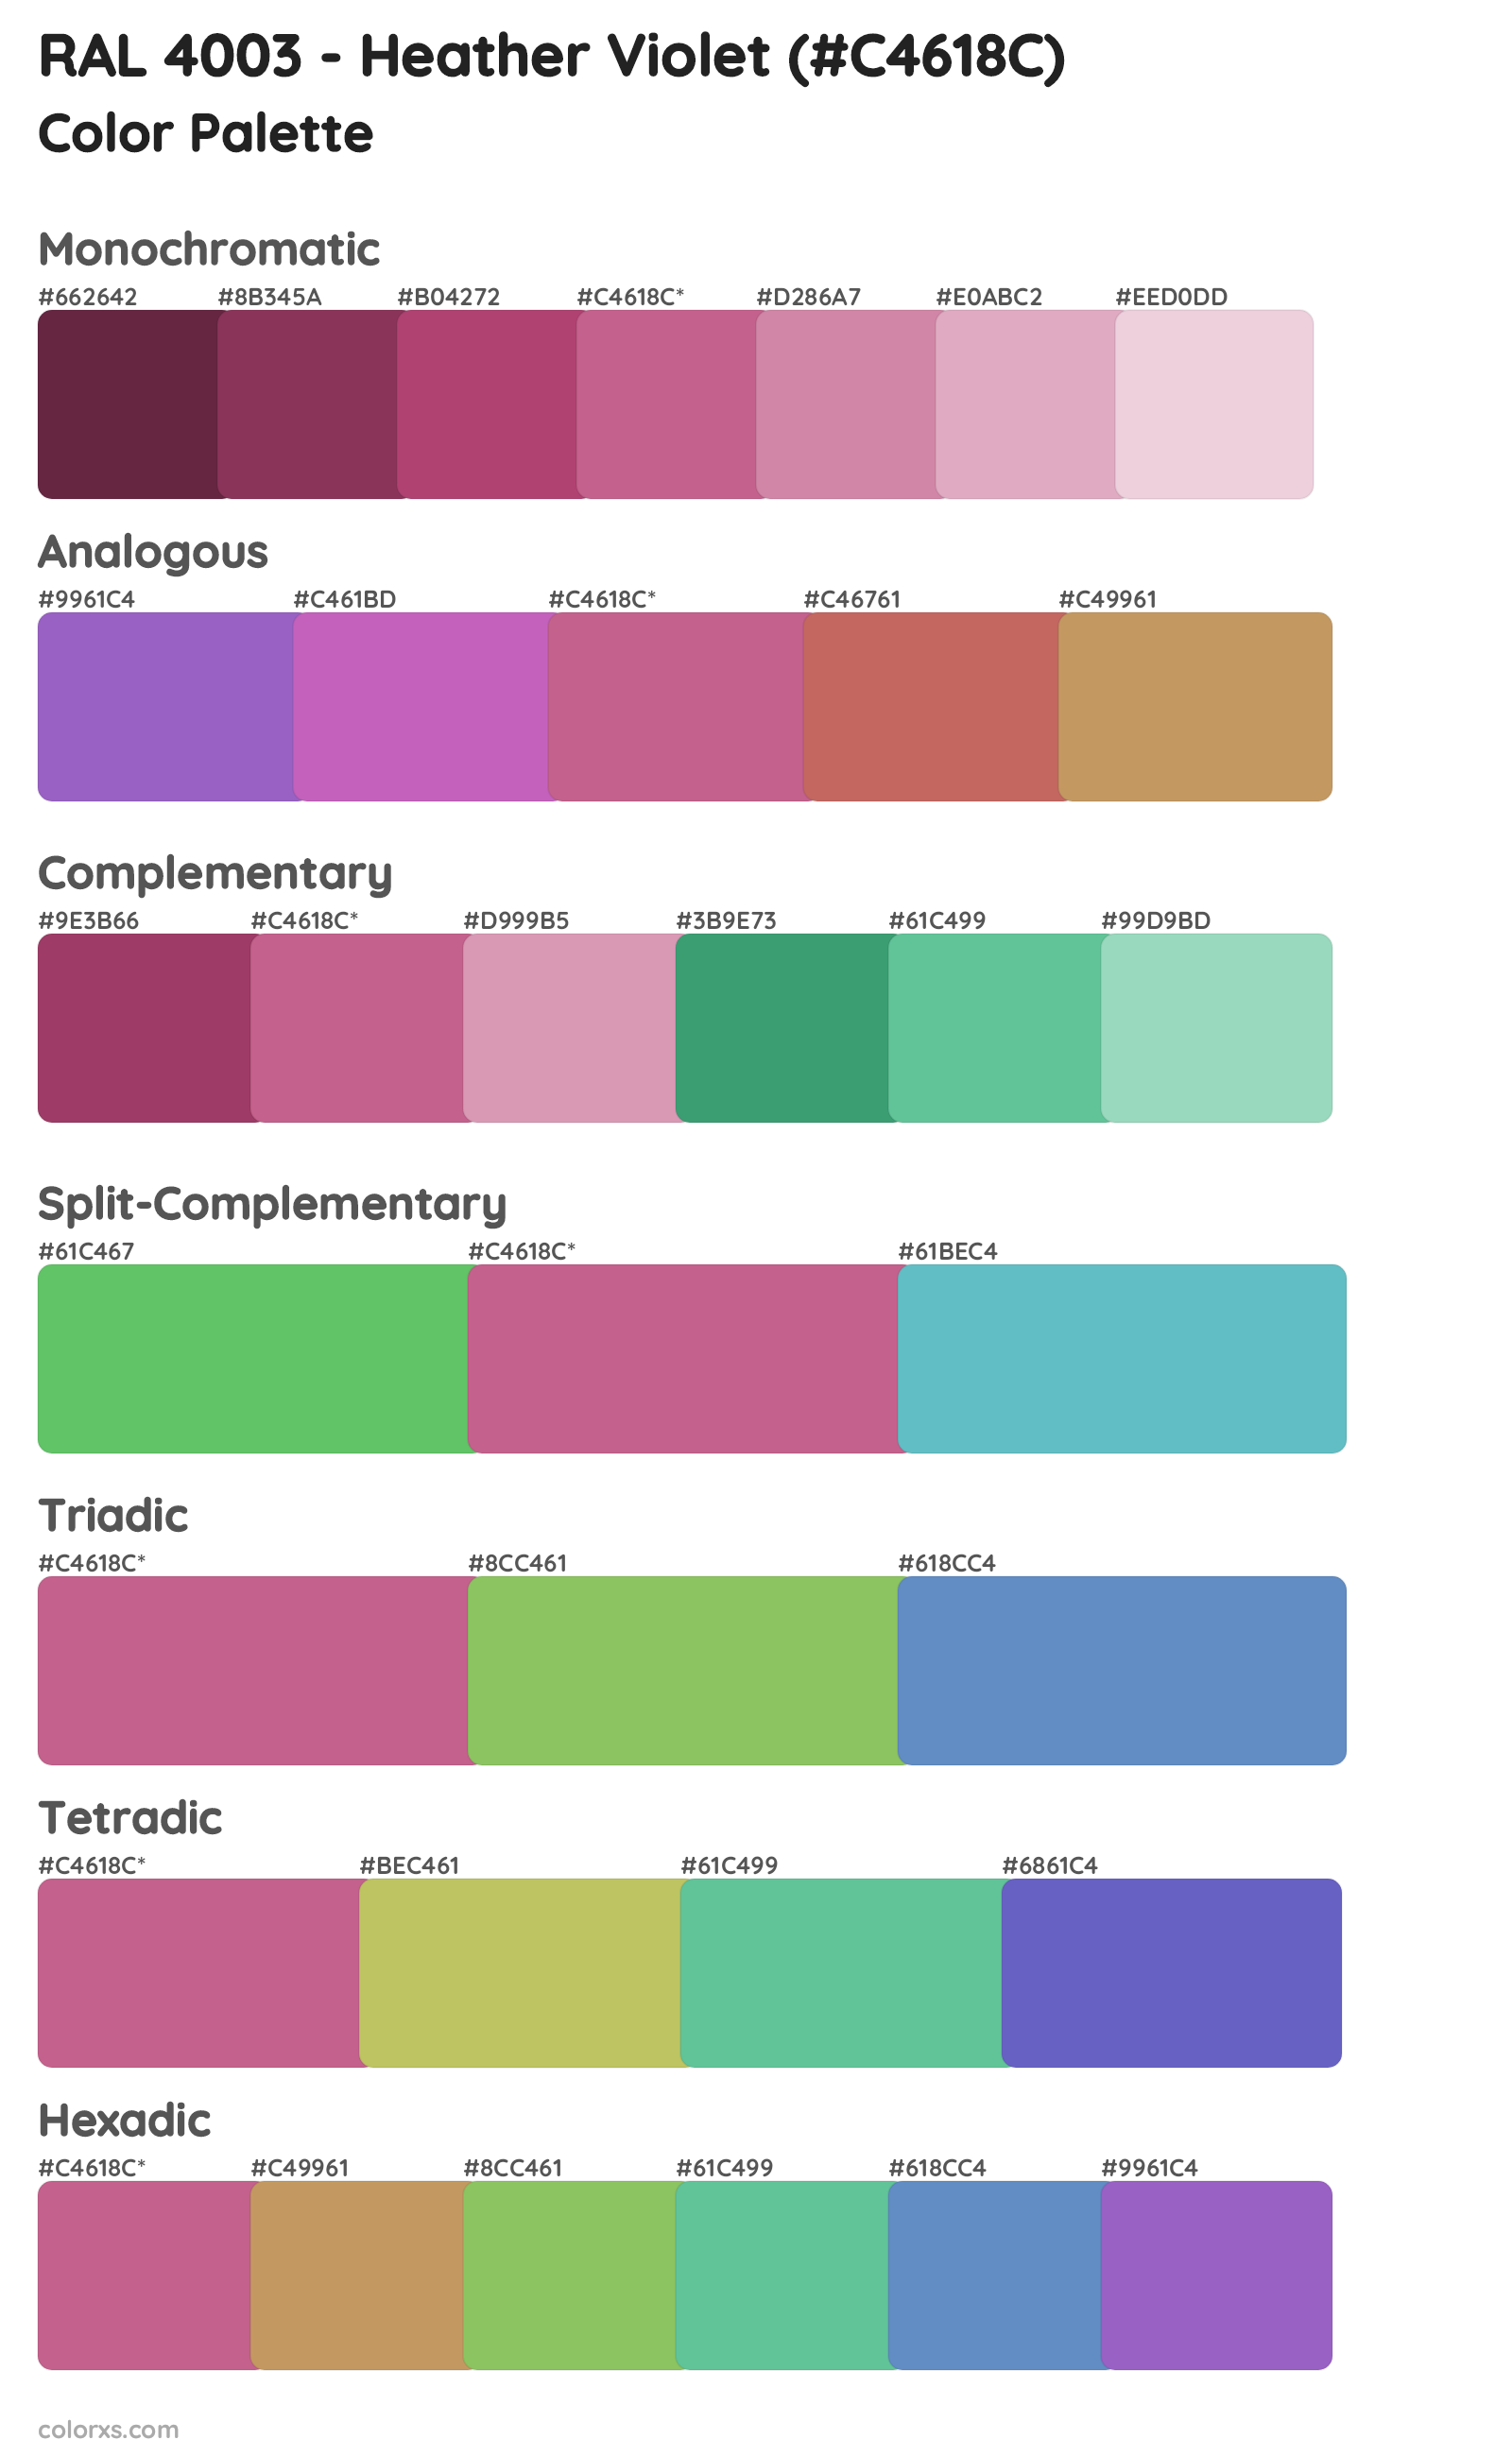 RAL 4003 - Heather Violet Color Scheme Palettes